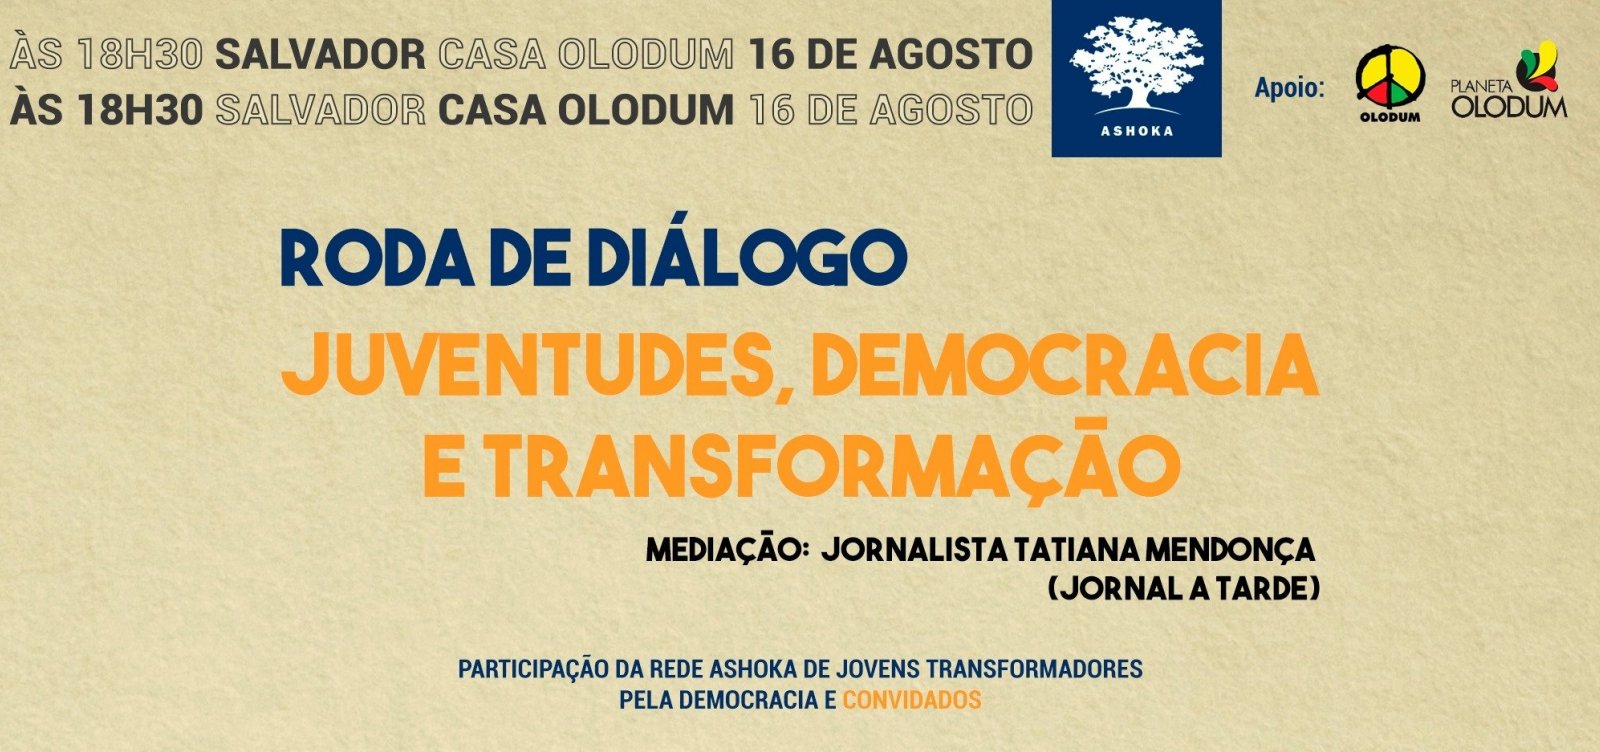 Casa do Olodum sedia evento de debates sobre juventudes, democracia e transformação